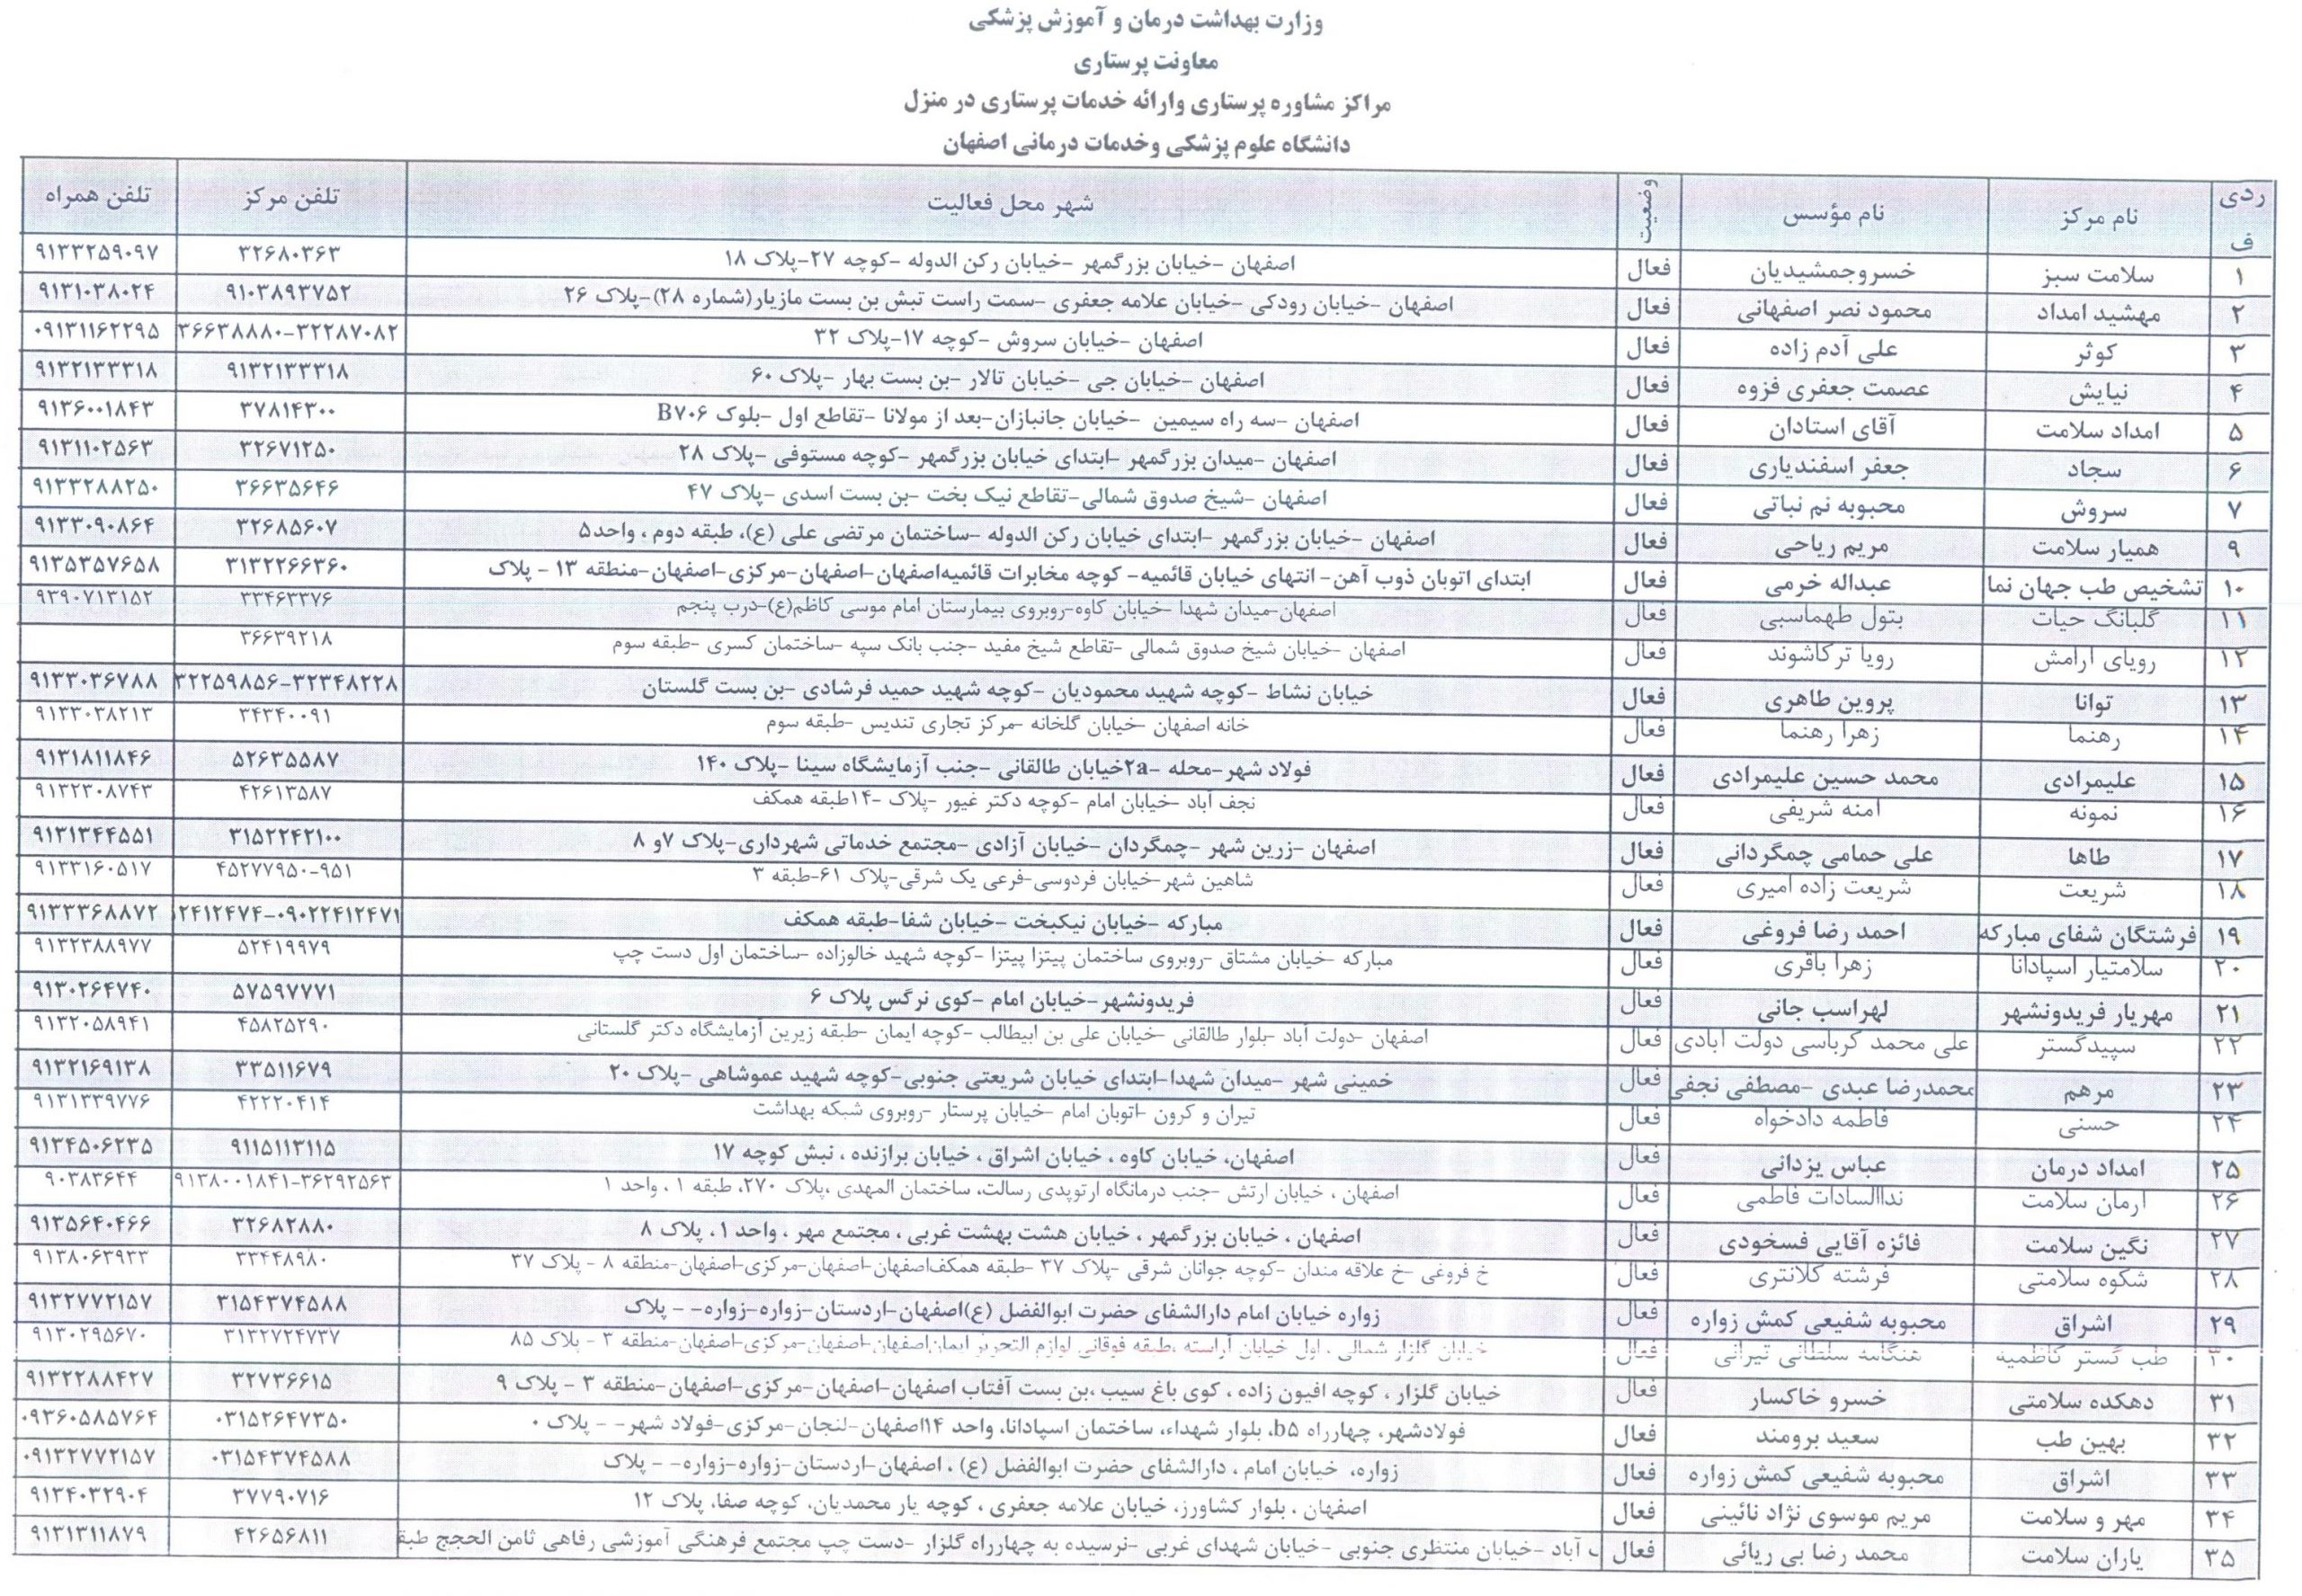 لیست مراکز مراقبت در منزل استان اصفهان